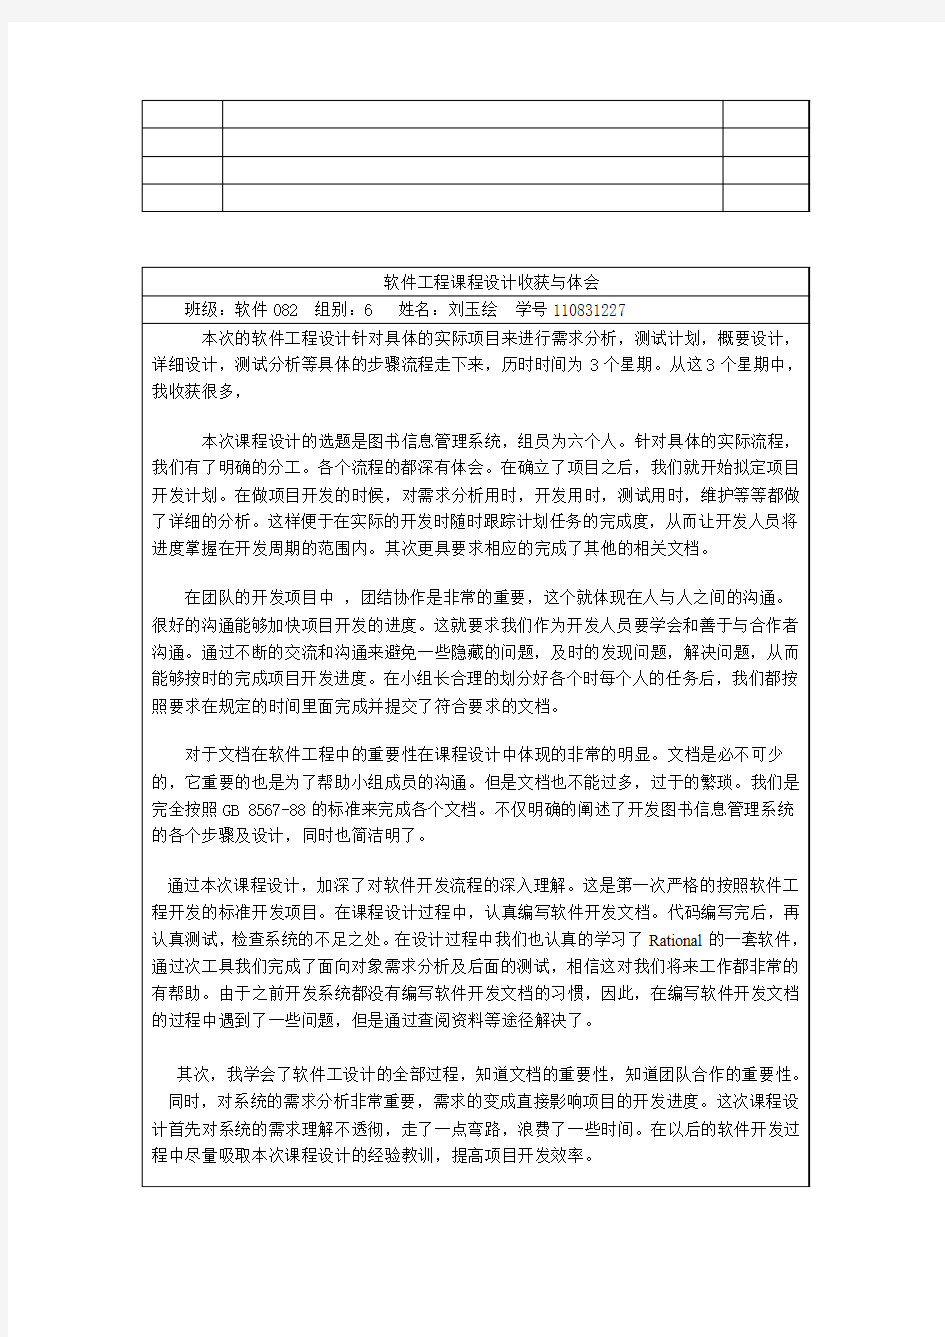 刘玉绘 软件工程课程设计总结报告